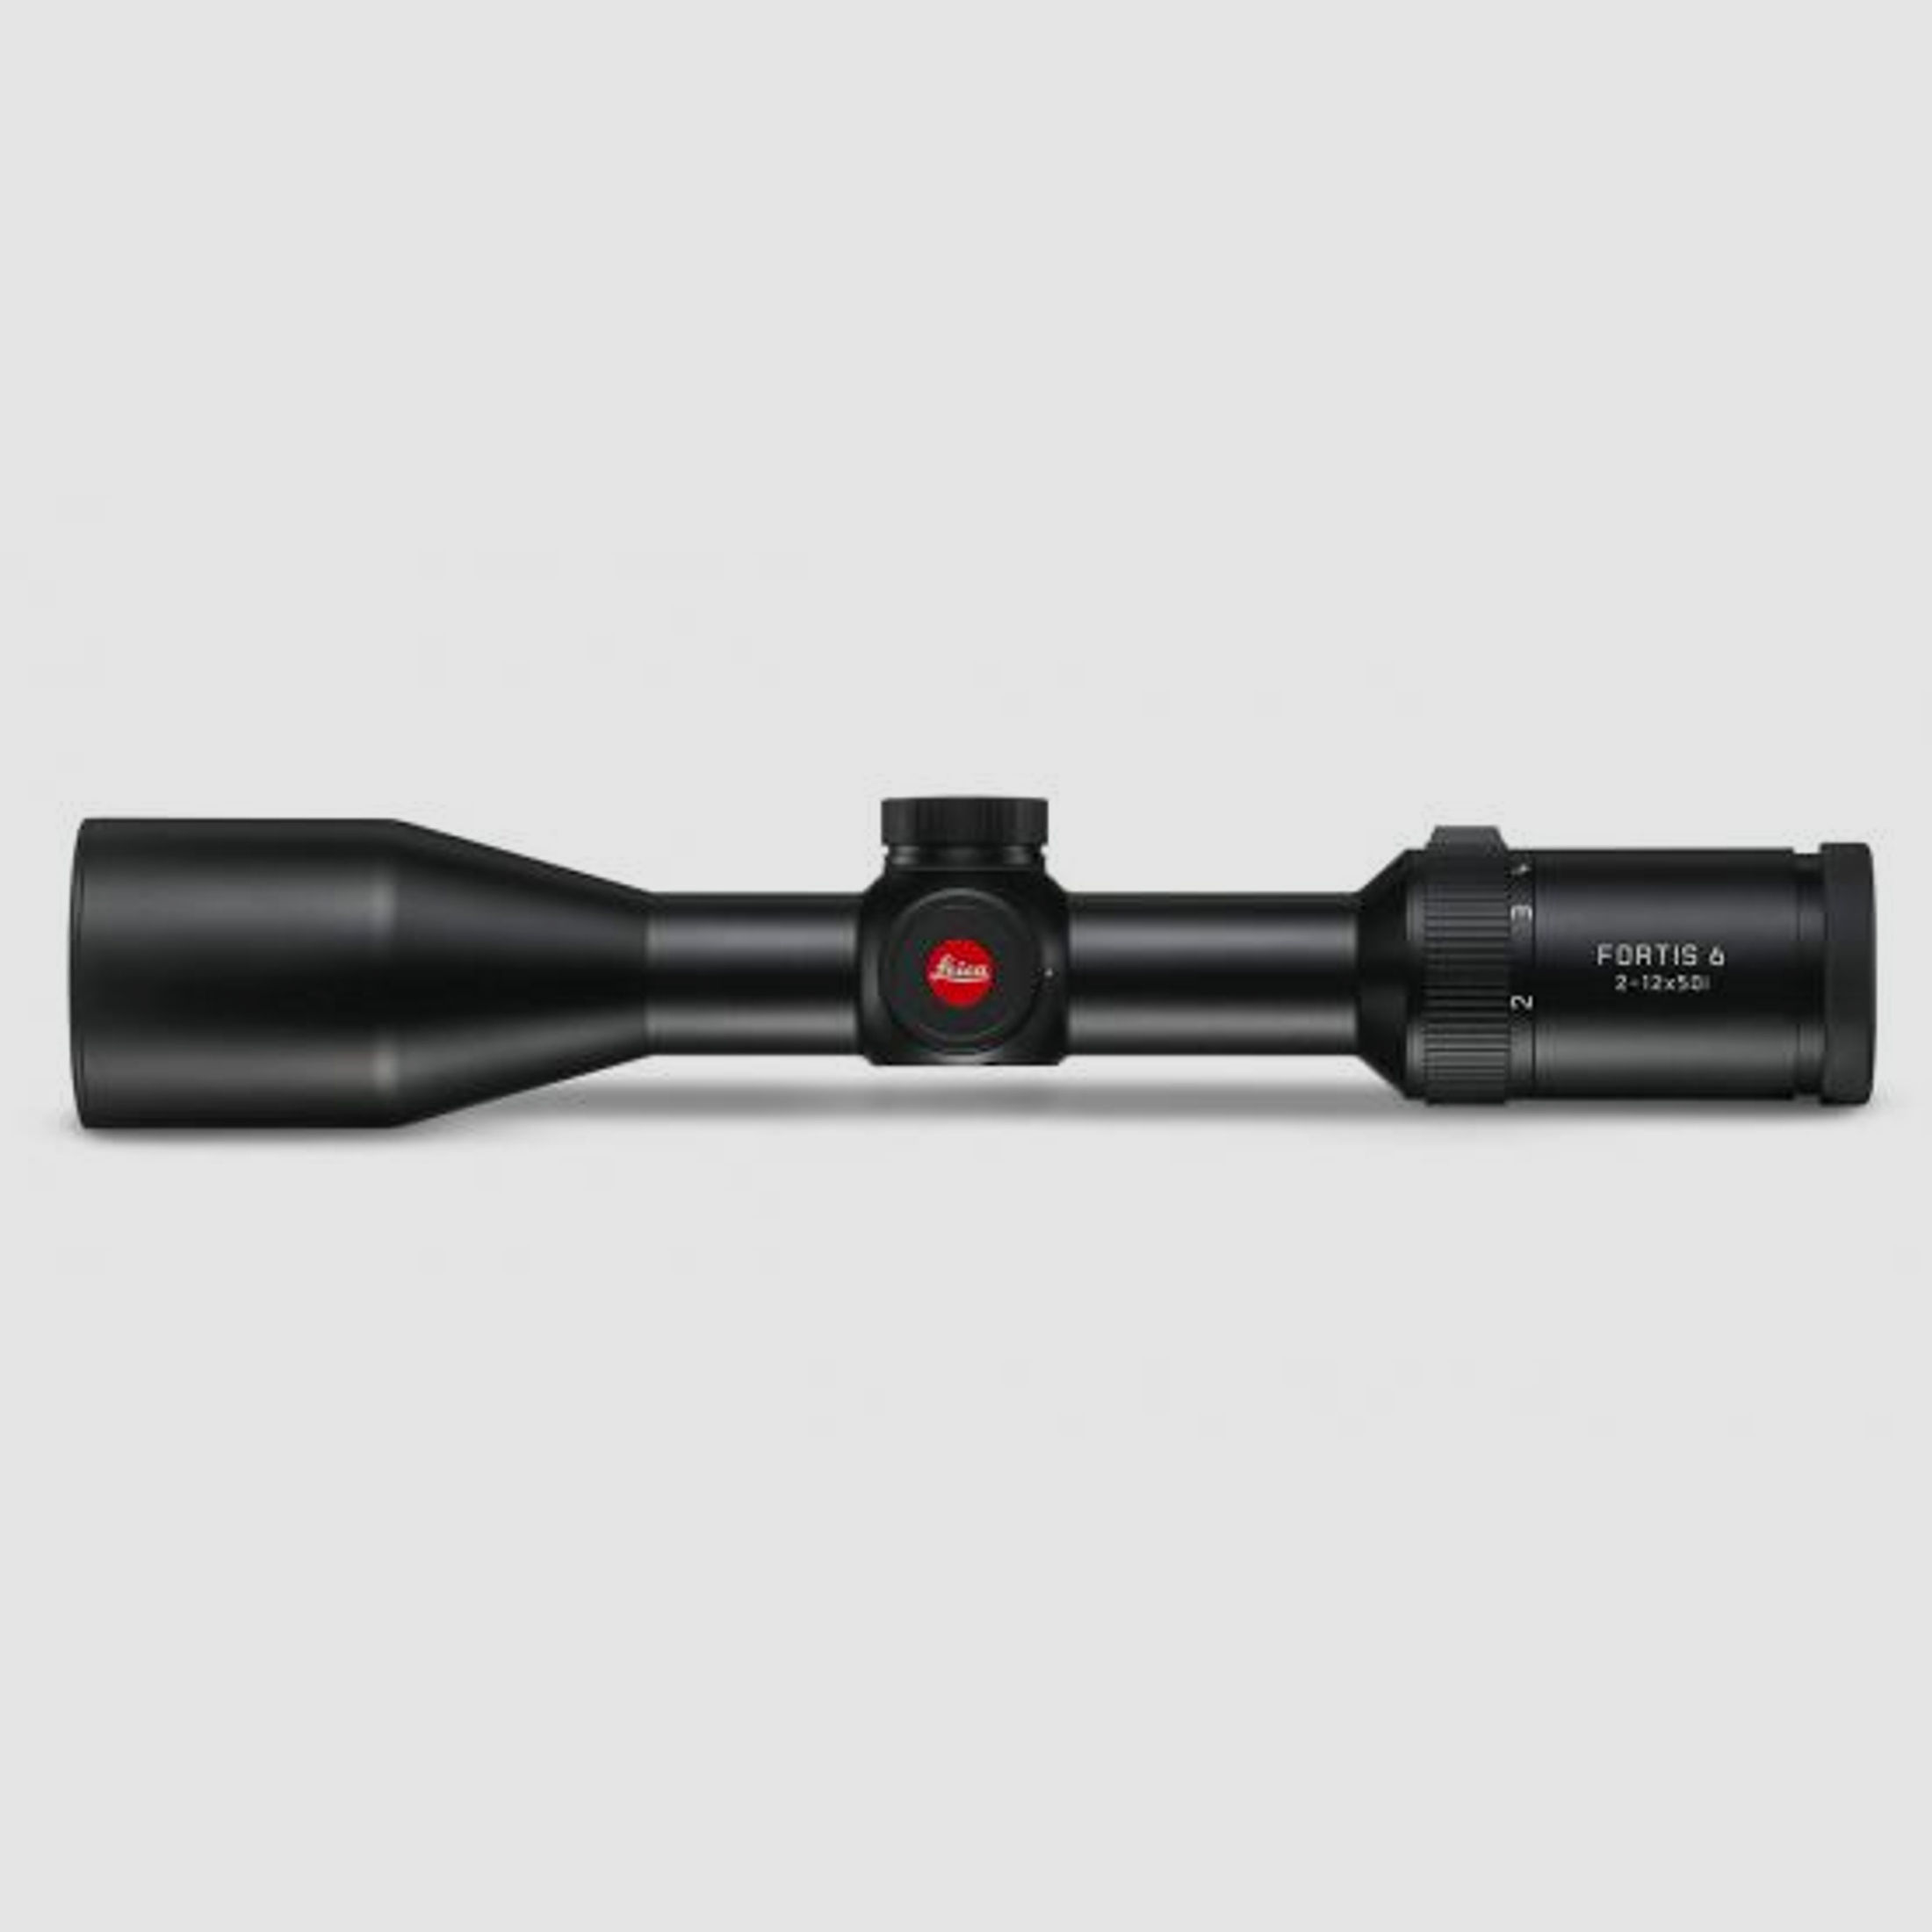 Leica Fortis 6 2-12x50i L-4a mit Schiene 
                Mit dem Fortis 6 verbindet Leica ein puristisches Zielfernrohrdesign mit hoher optischer Abbildungsleistung.